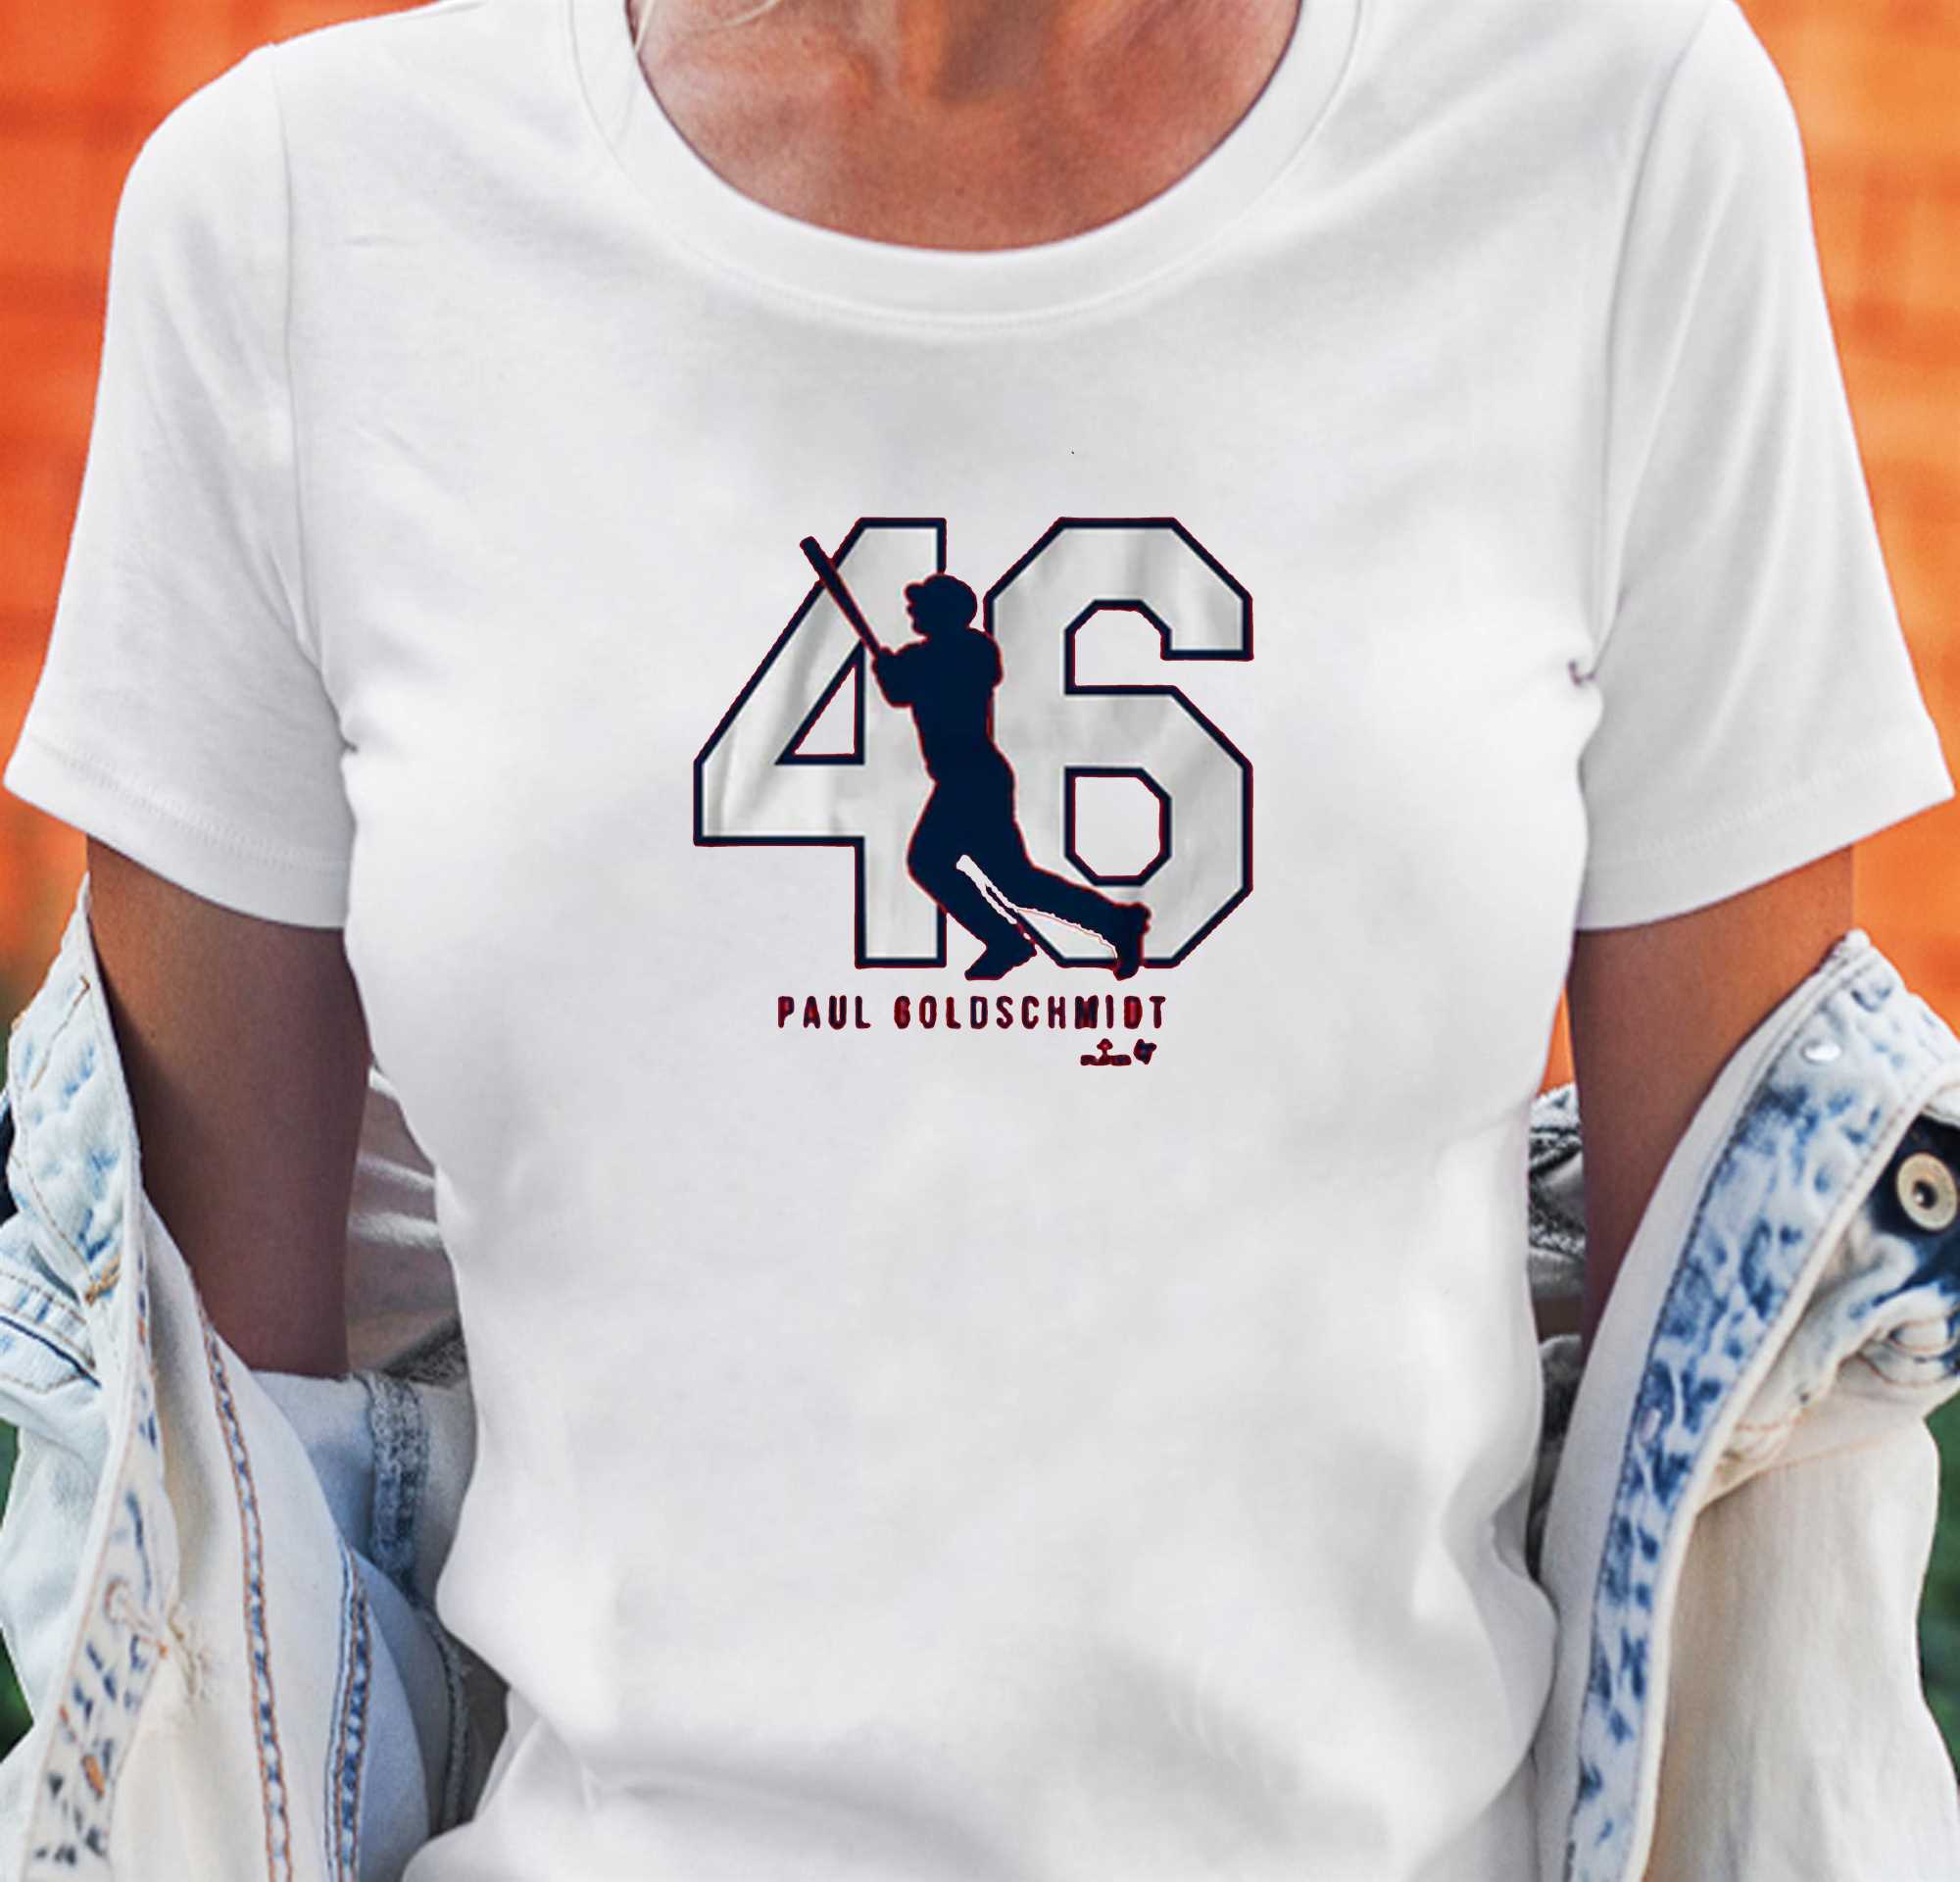 Paul Goldschmidt 46 St Louis T-shirt